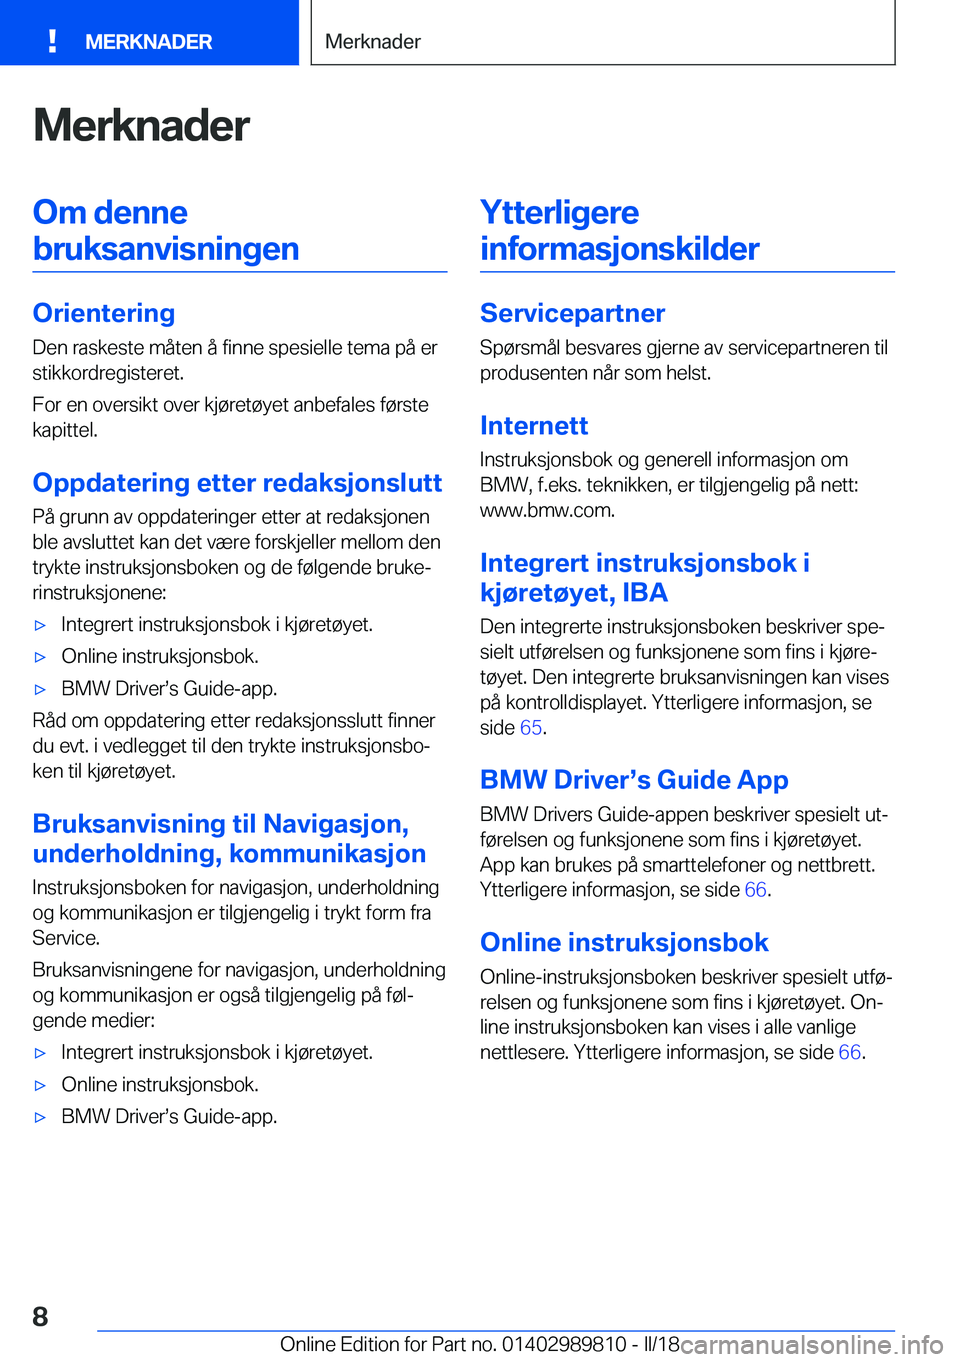 BMW M5 2018  InstruksjonsbØker (in Norwegian) �M�e�r�k�n�a�d�e�r�O�m��d�e�n�n�e�b�r�u�k�s�a�n�v�i�s�n�i�n�g�e�n
�O�r�i�e�n�t�e�r�i�n�g
�D�e�n� �r�a�s�k�e�s�t�e� �m�å�t�e�n� �å� �f�i�n�n�e� �s�p�e�s�i�e�l�l�e� �t�e�m�a� �p�å� �e�r �s�t�i�k�k�o